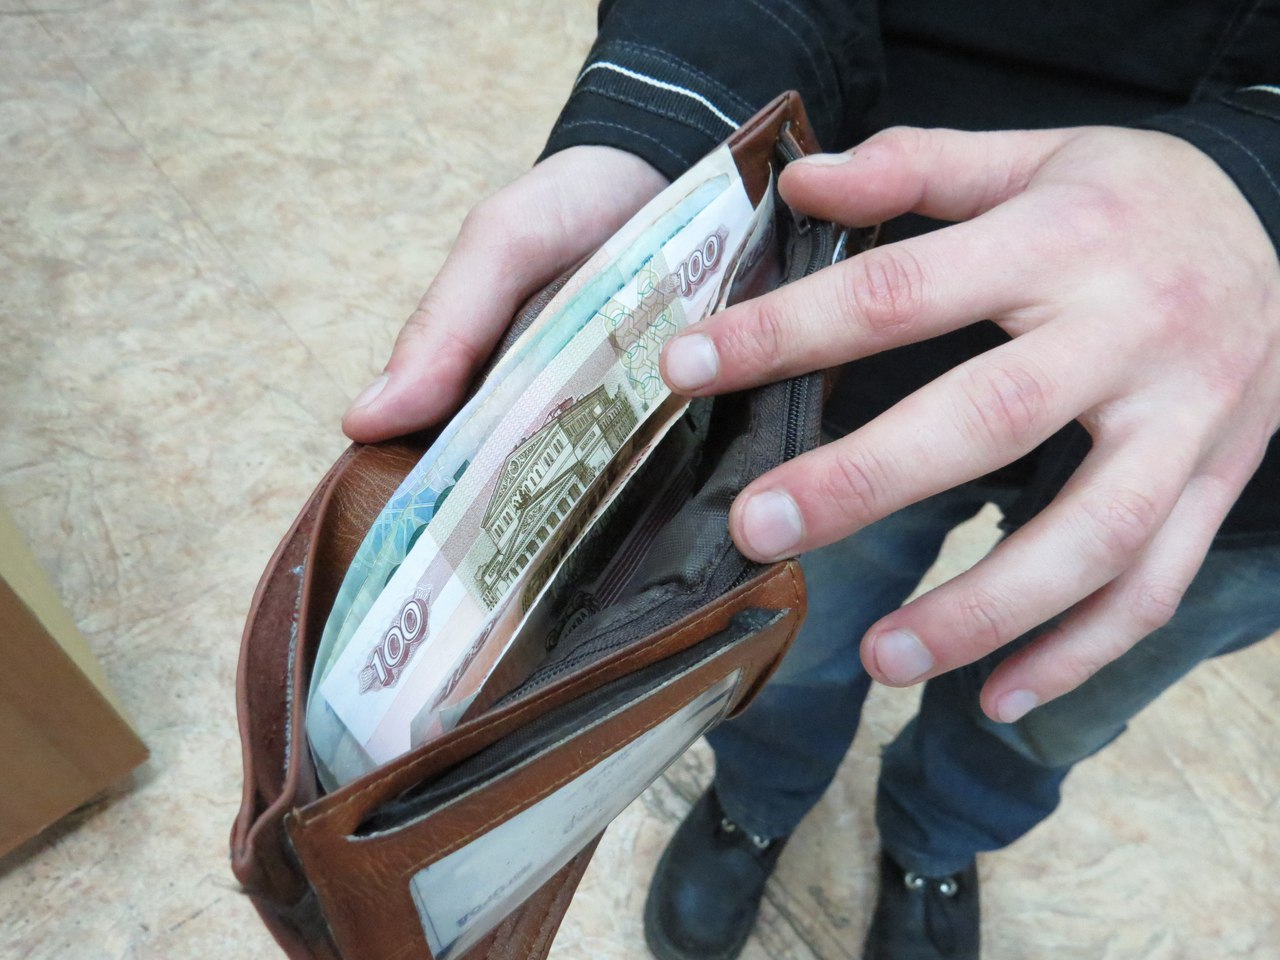 В Воркуте сотрудник ломбарда вымогал деньги за потерянный телефон